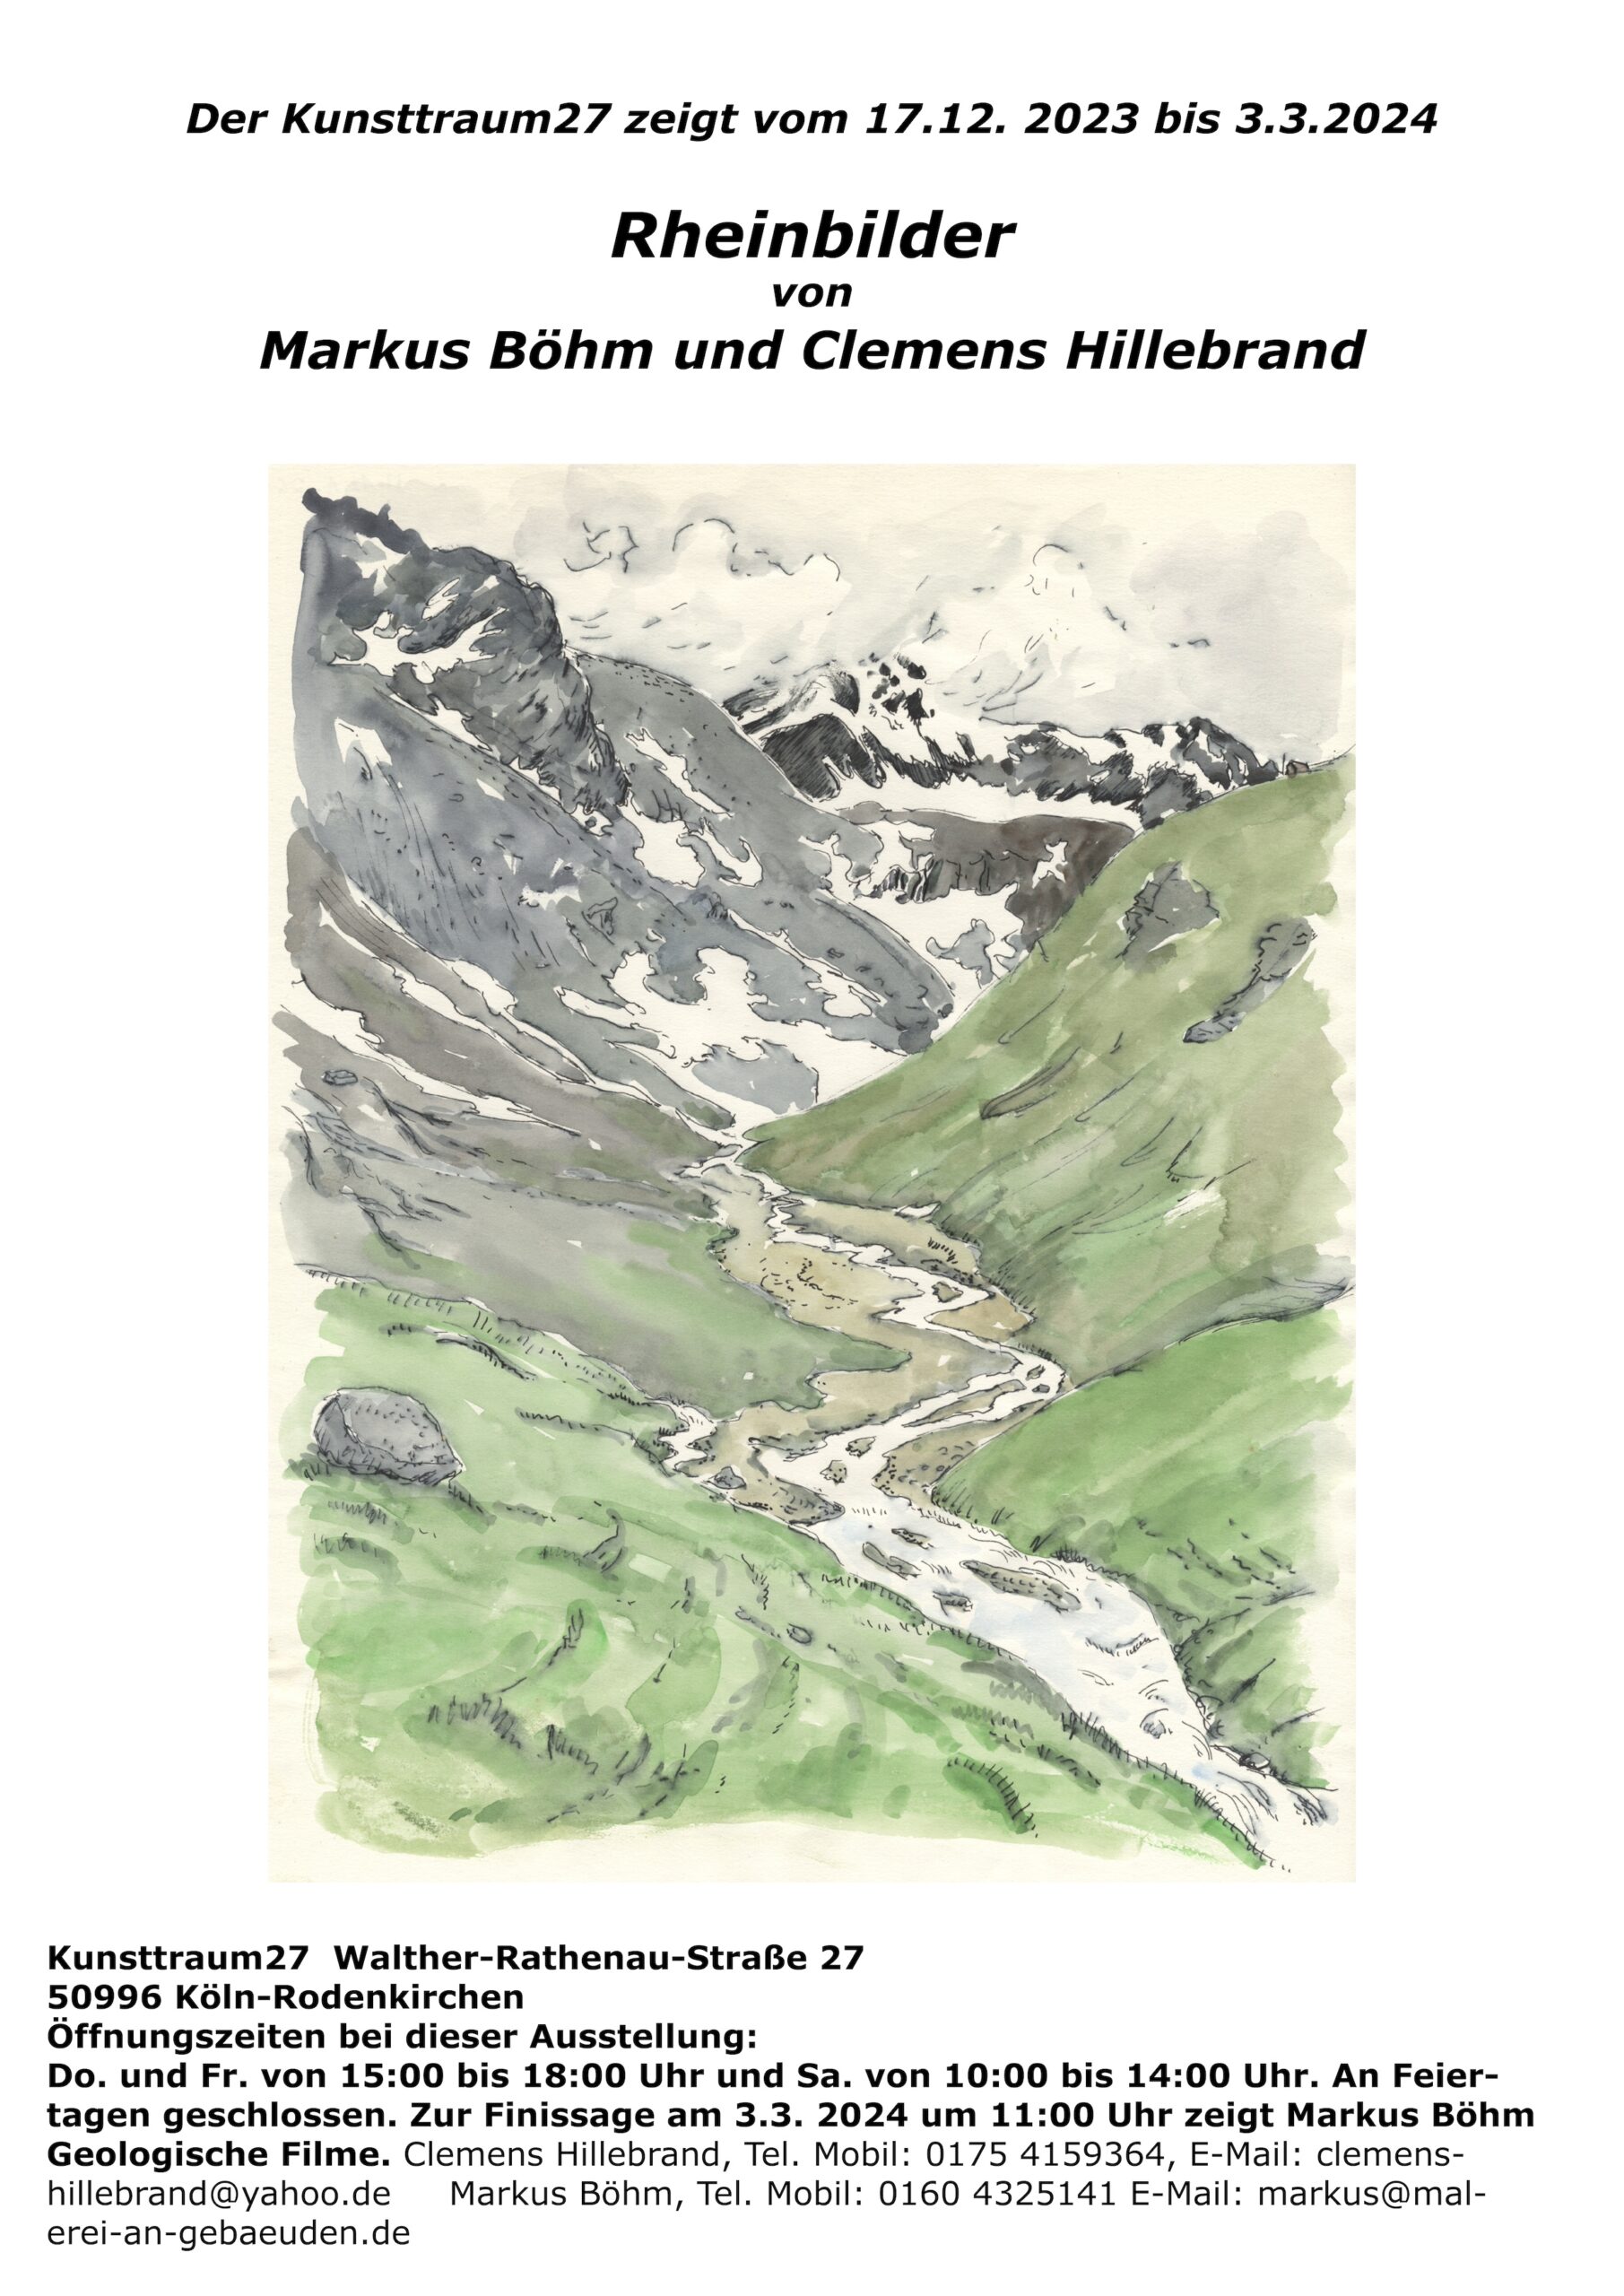 Plakat zur Ausstellung Rheinbilder, 2023 und 2024 von Markus Böhm und Clemens Hillebrand unter Verwendung eines Holzschnitts von Markus Böhm,